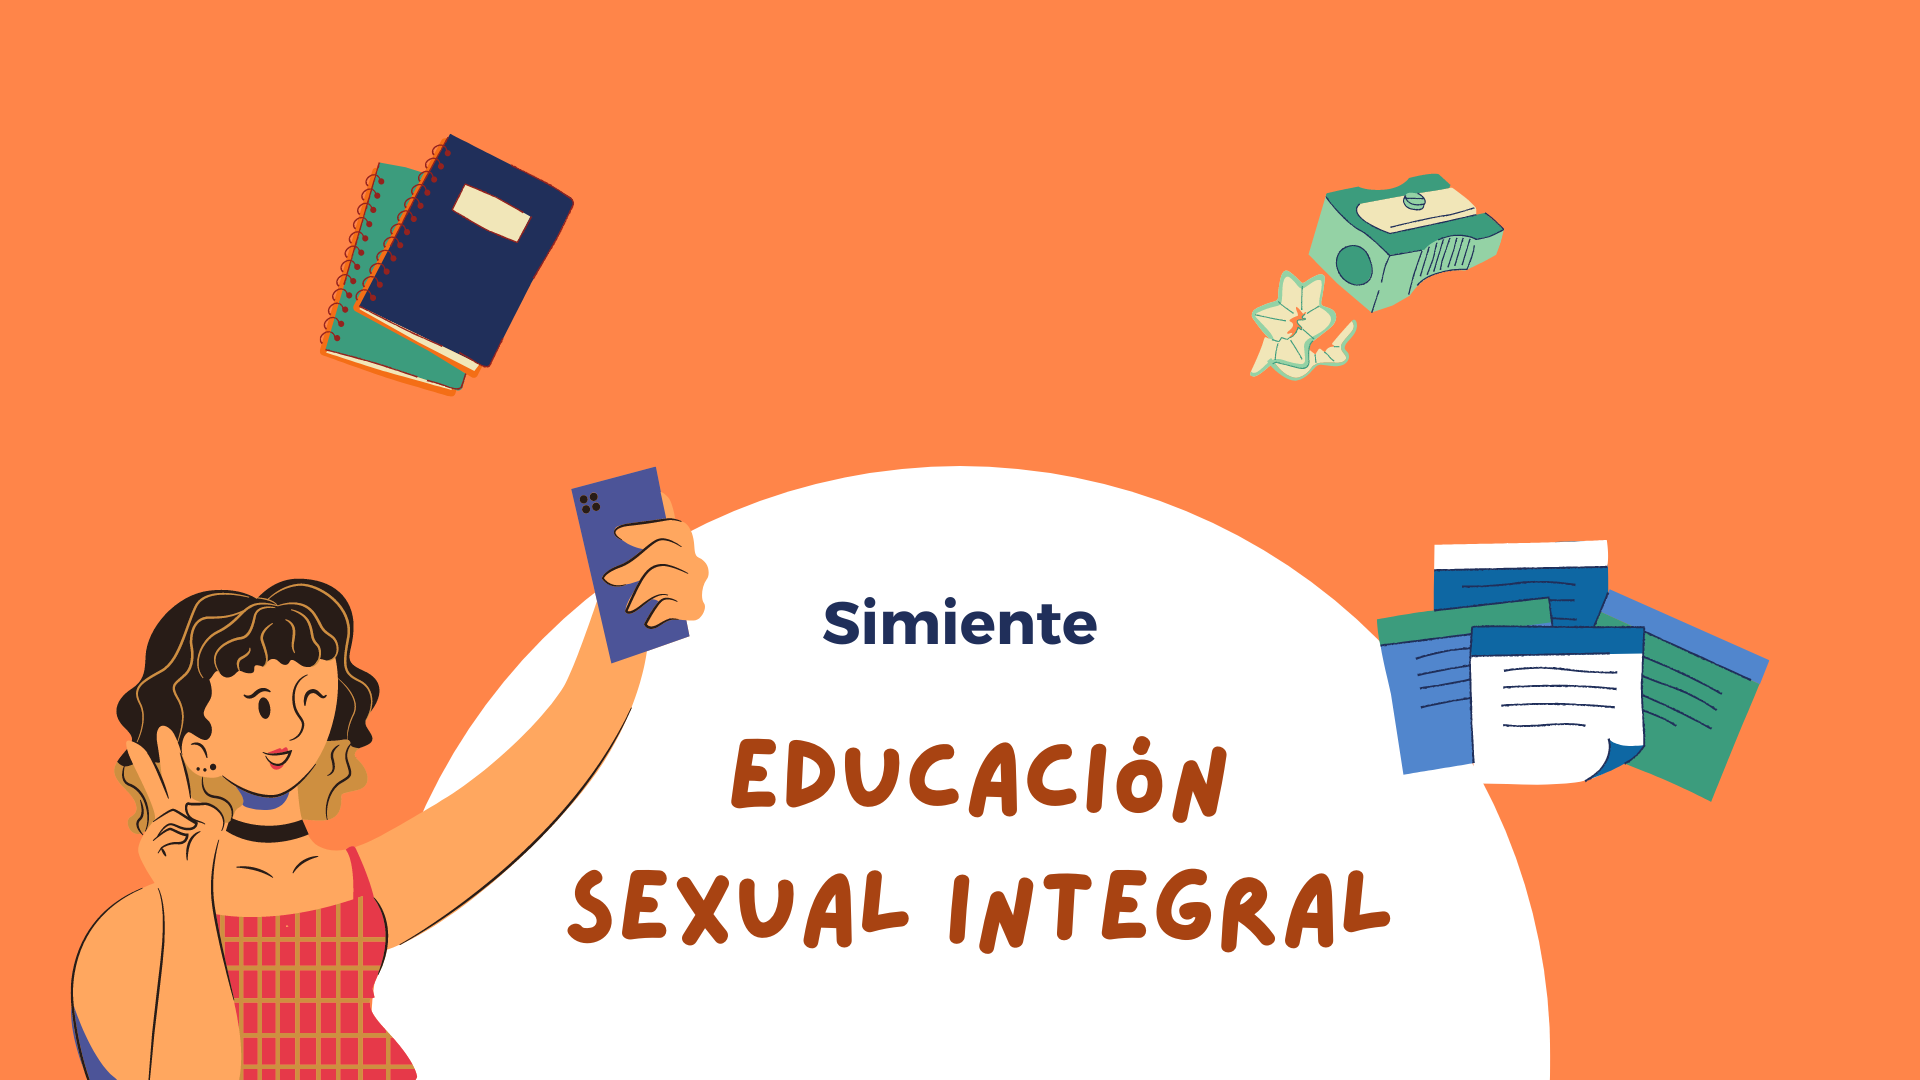 Educación sexual integral - Guía educativa - Simiente